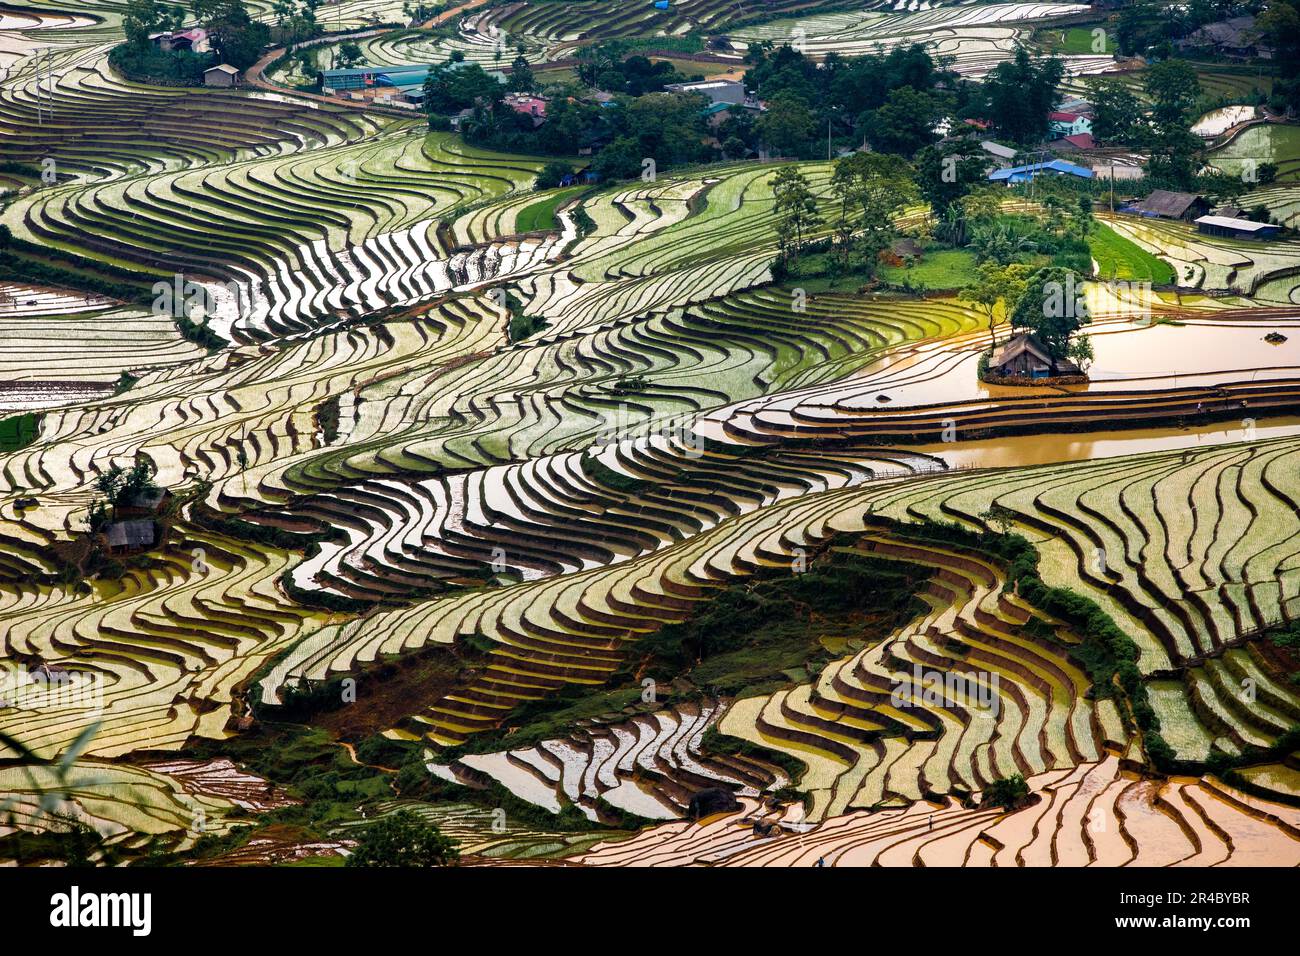 In der Regenzeit werden die terrassenförmig angelegten Felder begossen, und in der Provinz Lao Cai, Vietnam, transplantieren die Farmer Reis Stockfoto